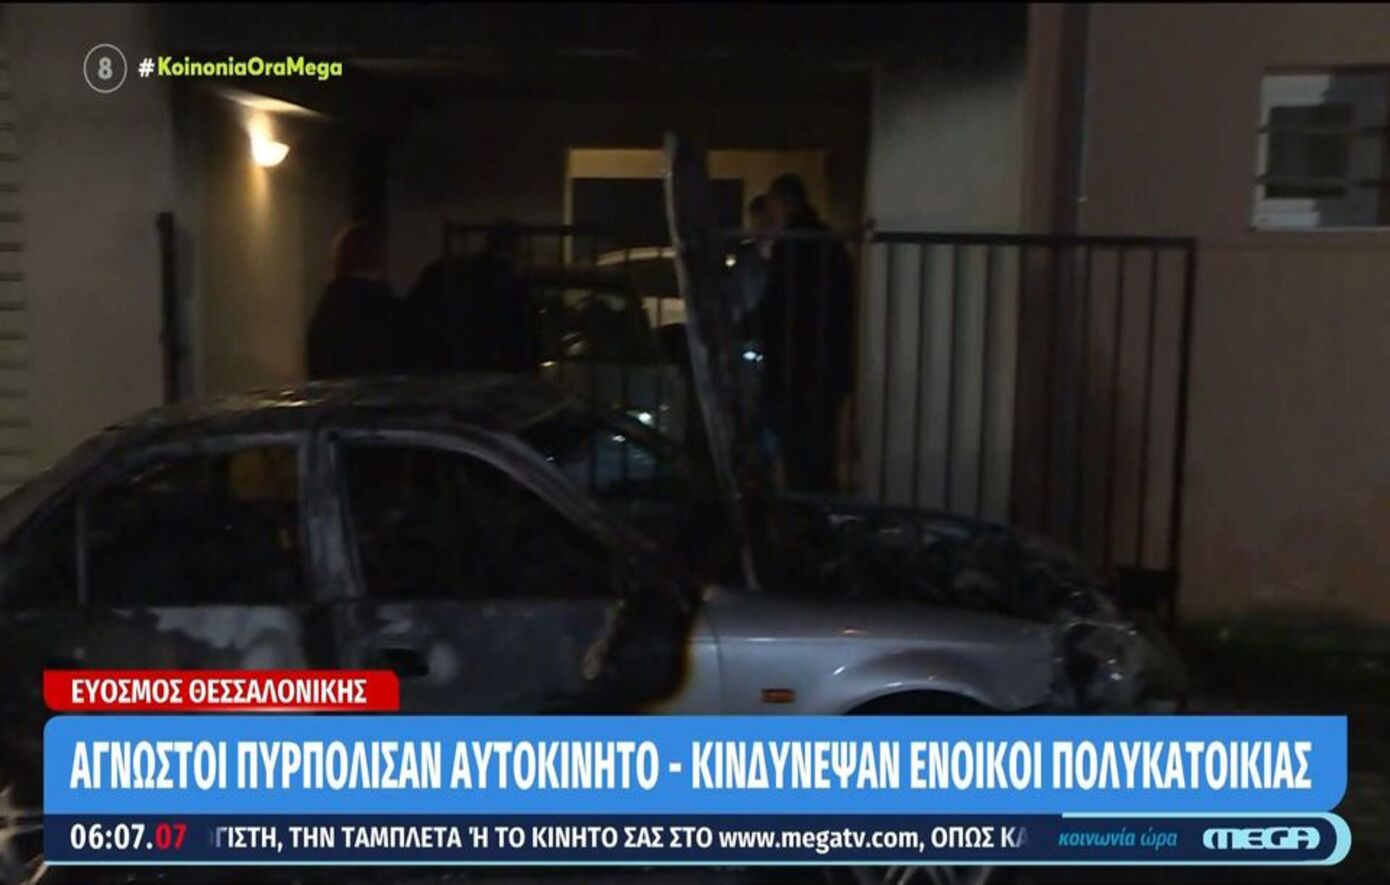 Έκρηξη αναστάτωσε τη Θεσσαλονίκη &#8211; Κινδύνεψαν ένοικοι πολυκατοικίας